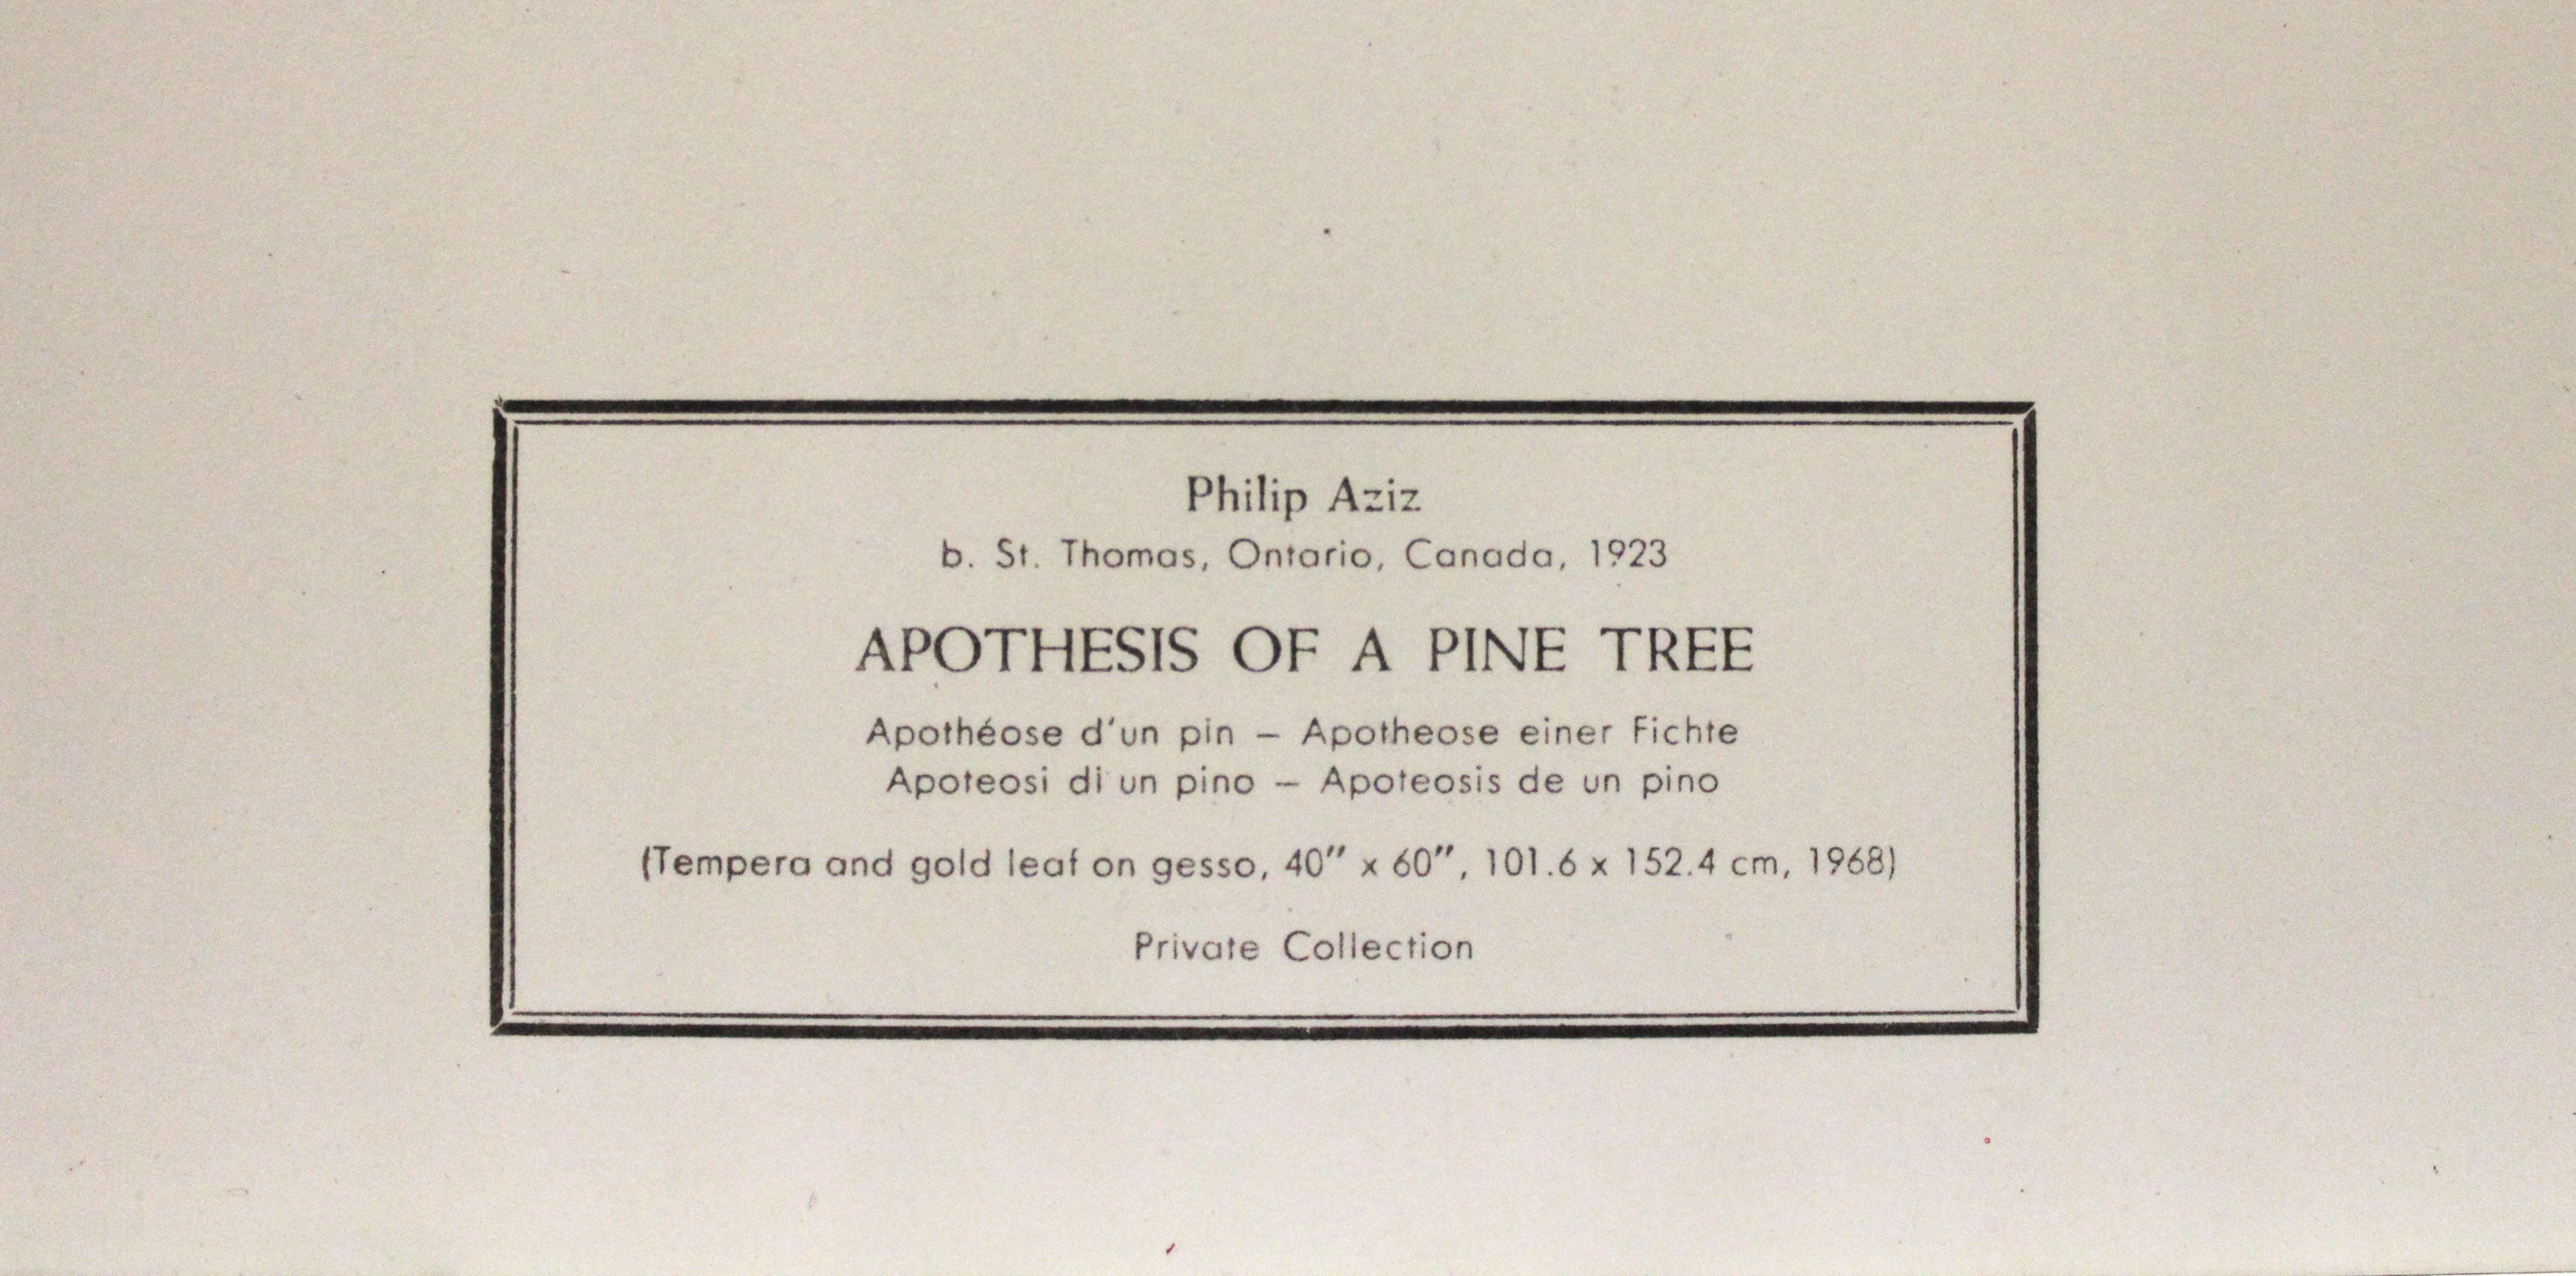 Apothèse d'une affiche d'arbre de pin. la Société graphique de New York - Print de Philip Aziz